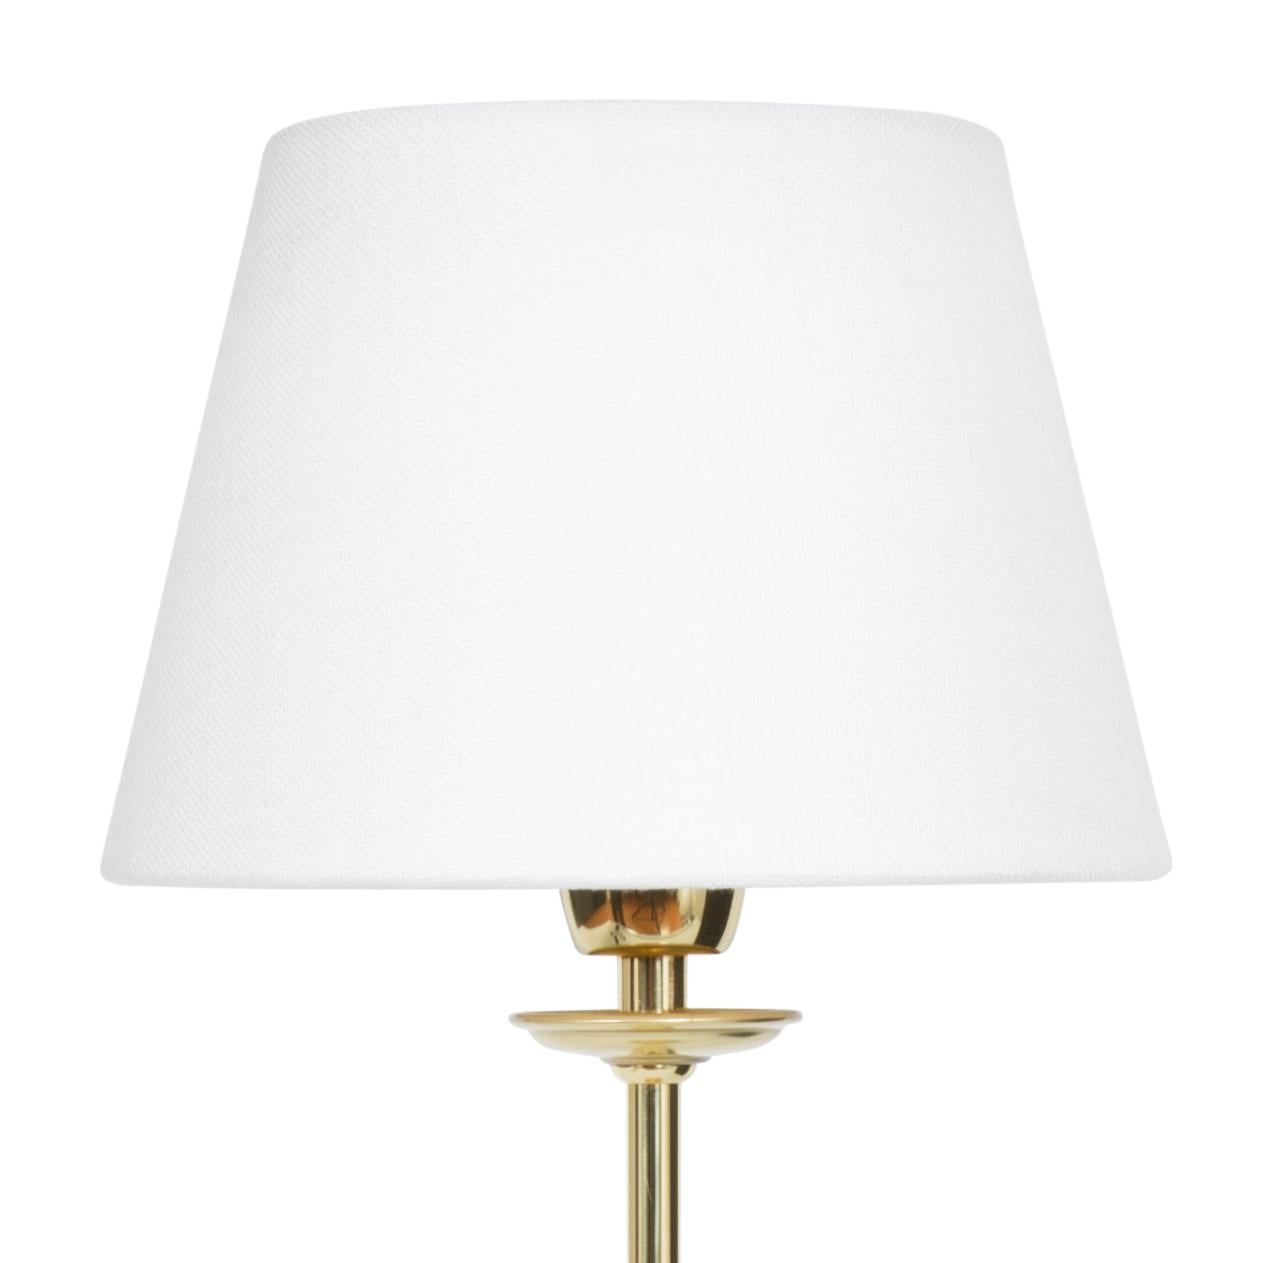 Lampe modèle Uno grande lampe de table en laiton poli conçue par Konsthantverk et fabriquée par eux-mêmes.

La production des lampes, des appliques et des lampadaires est réalisée de manière artisanale avec les mêmes matériaux et techniques que les